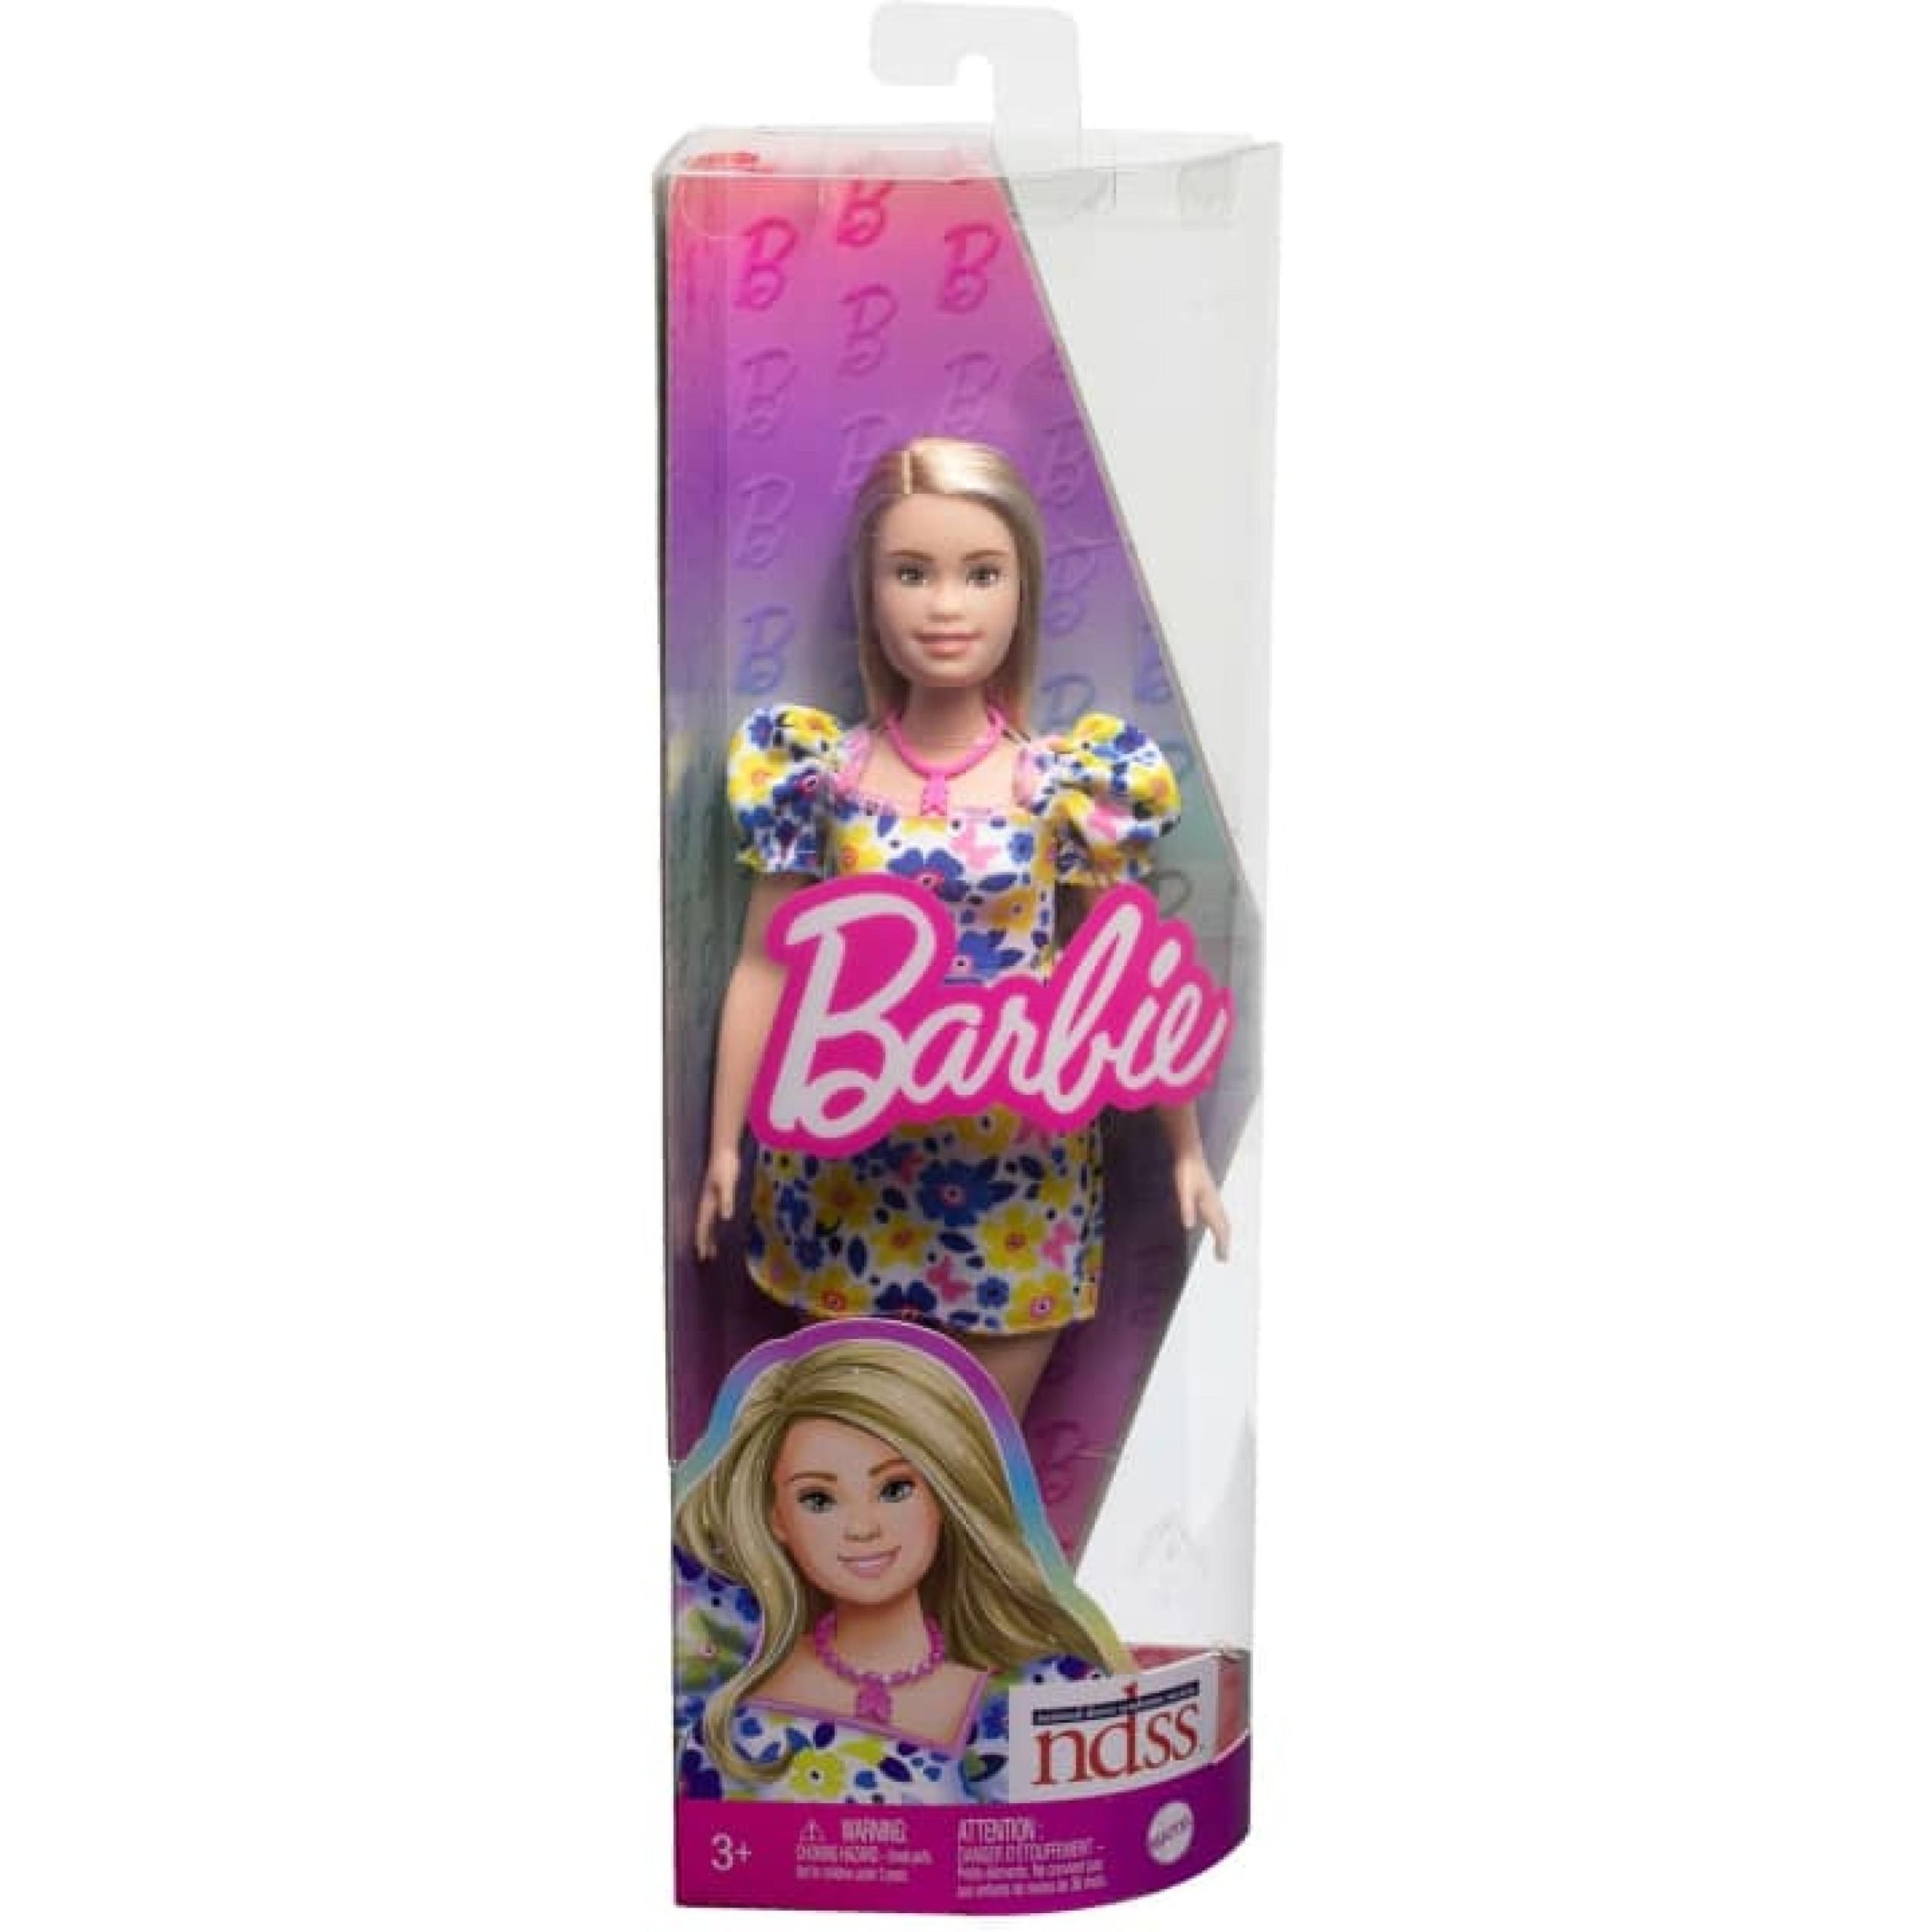 In vendita negli Usa la prima Barbie con la sindrome di Down